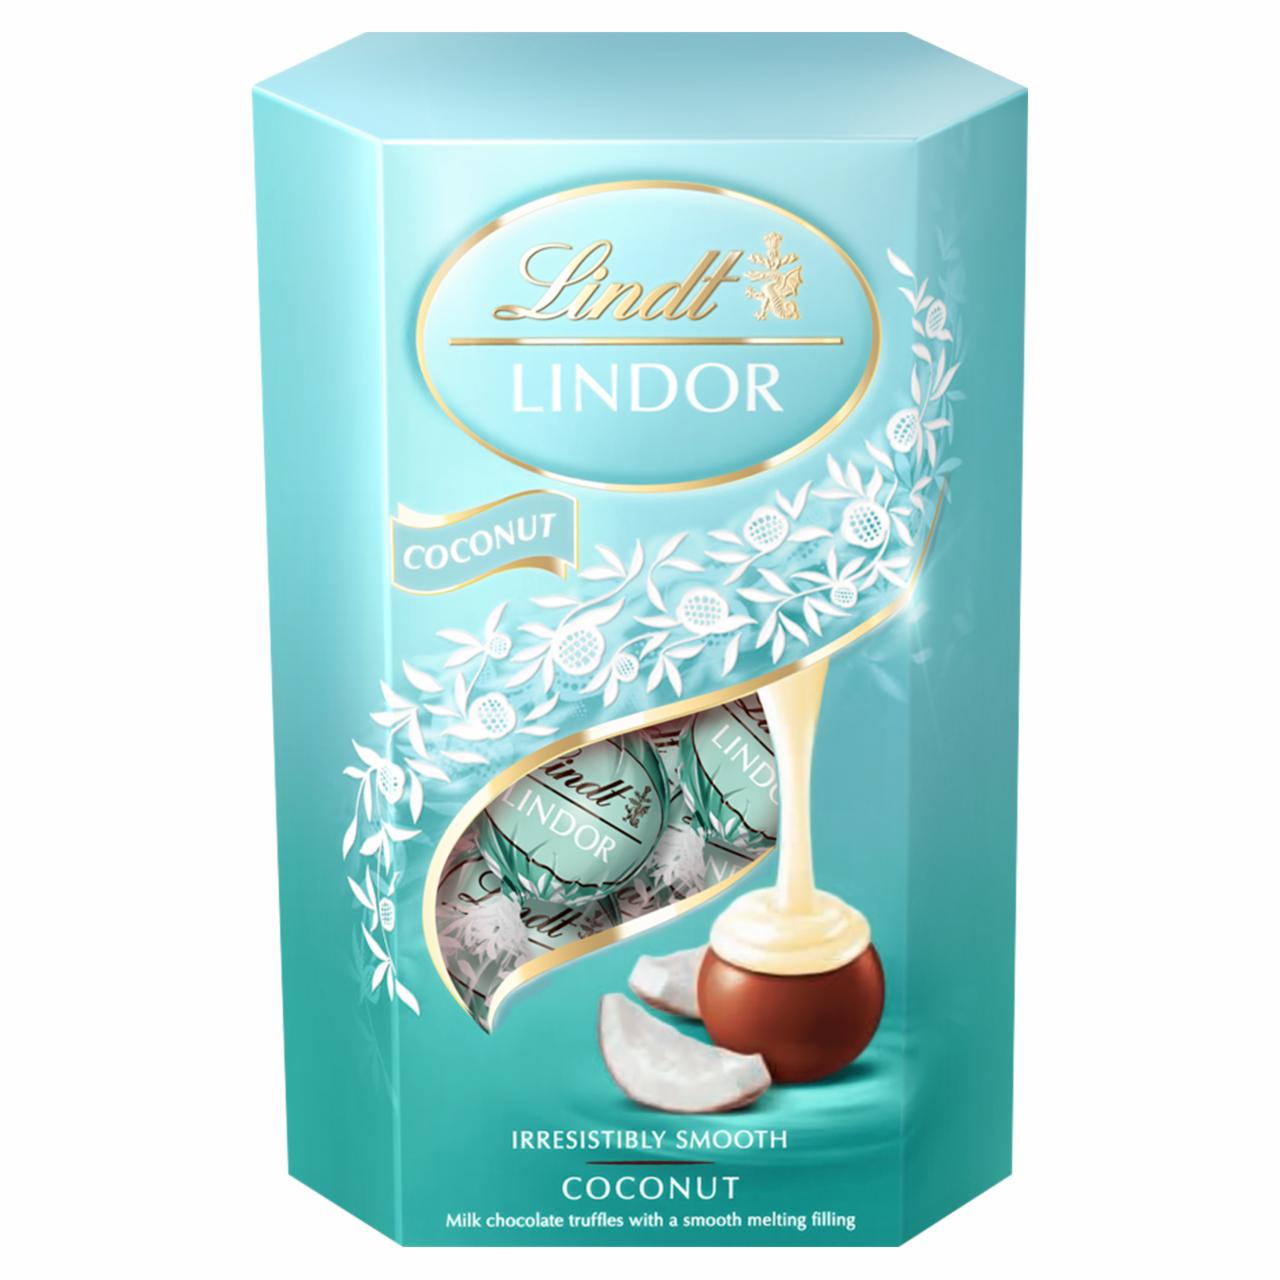 Zdjęcia - Lindt Lindor Praliny z czekolady mlecznej z kokosowym nadzieniem 200 g